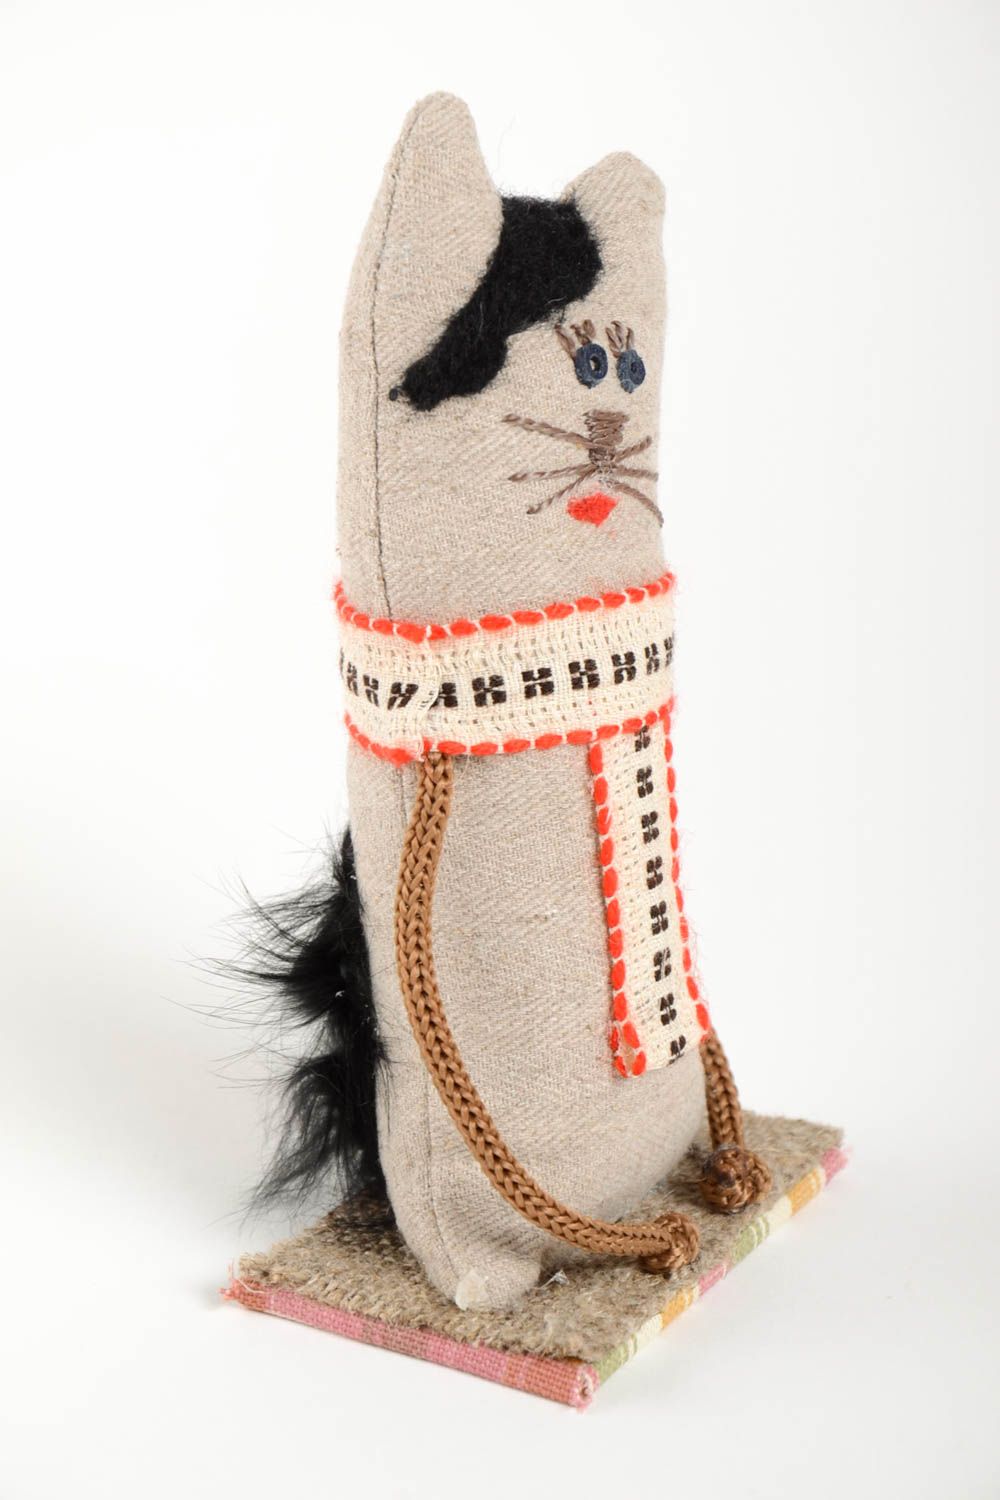 Котик фигурка ручной работы текстильный декор для дома необычный подарок ребенку фото 4